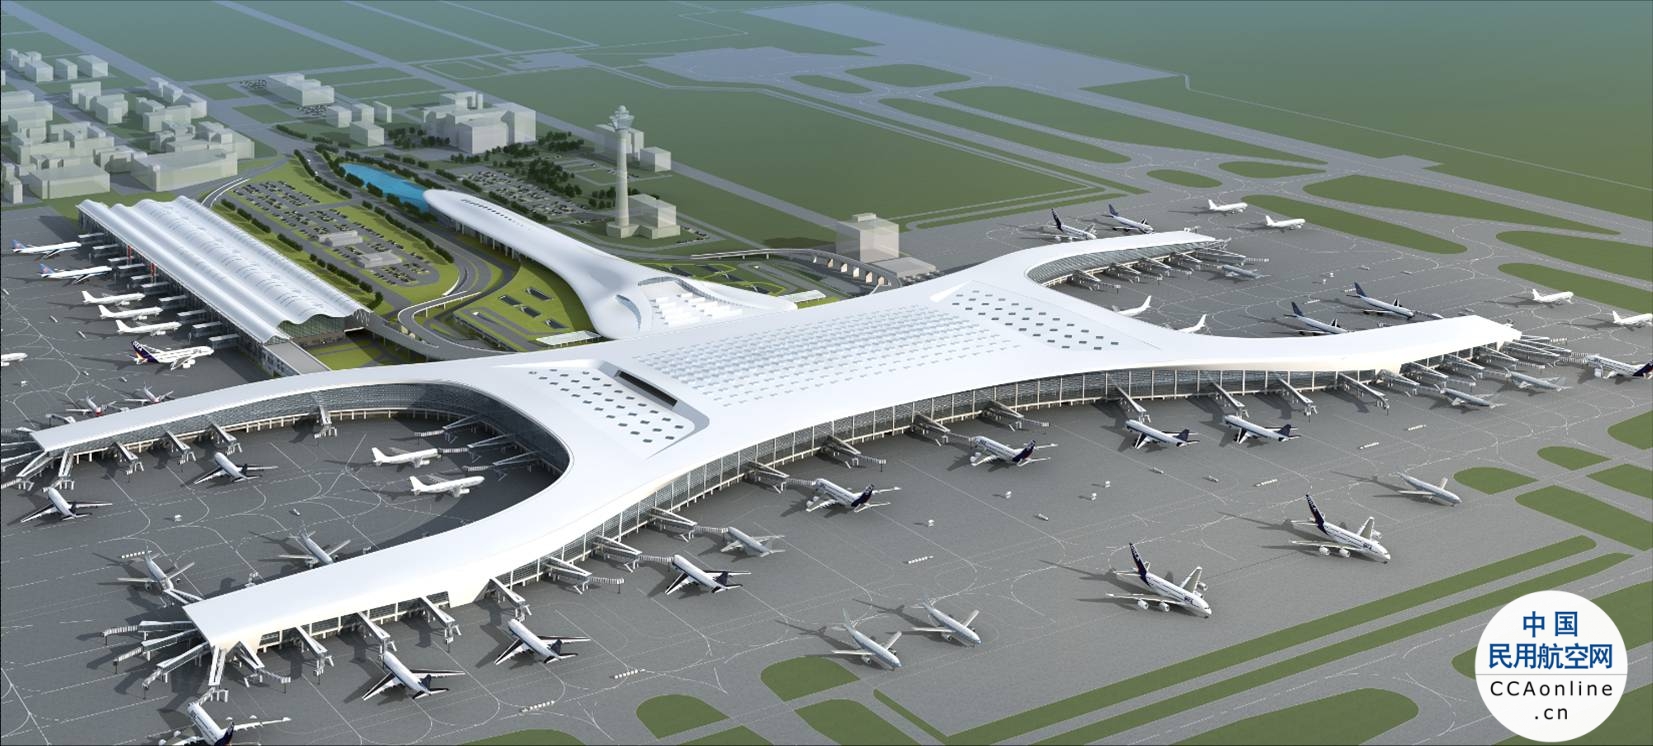 河南2035年将实现“一主五副六群”通用机场体系